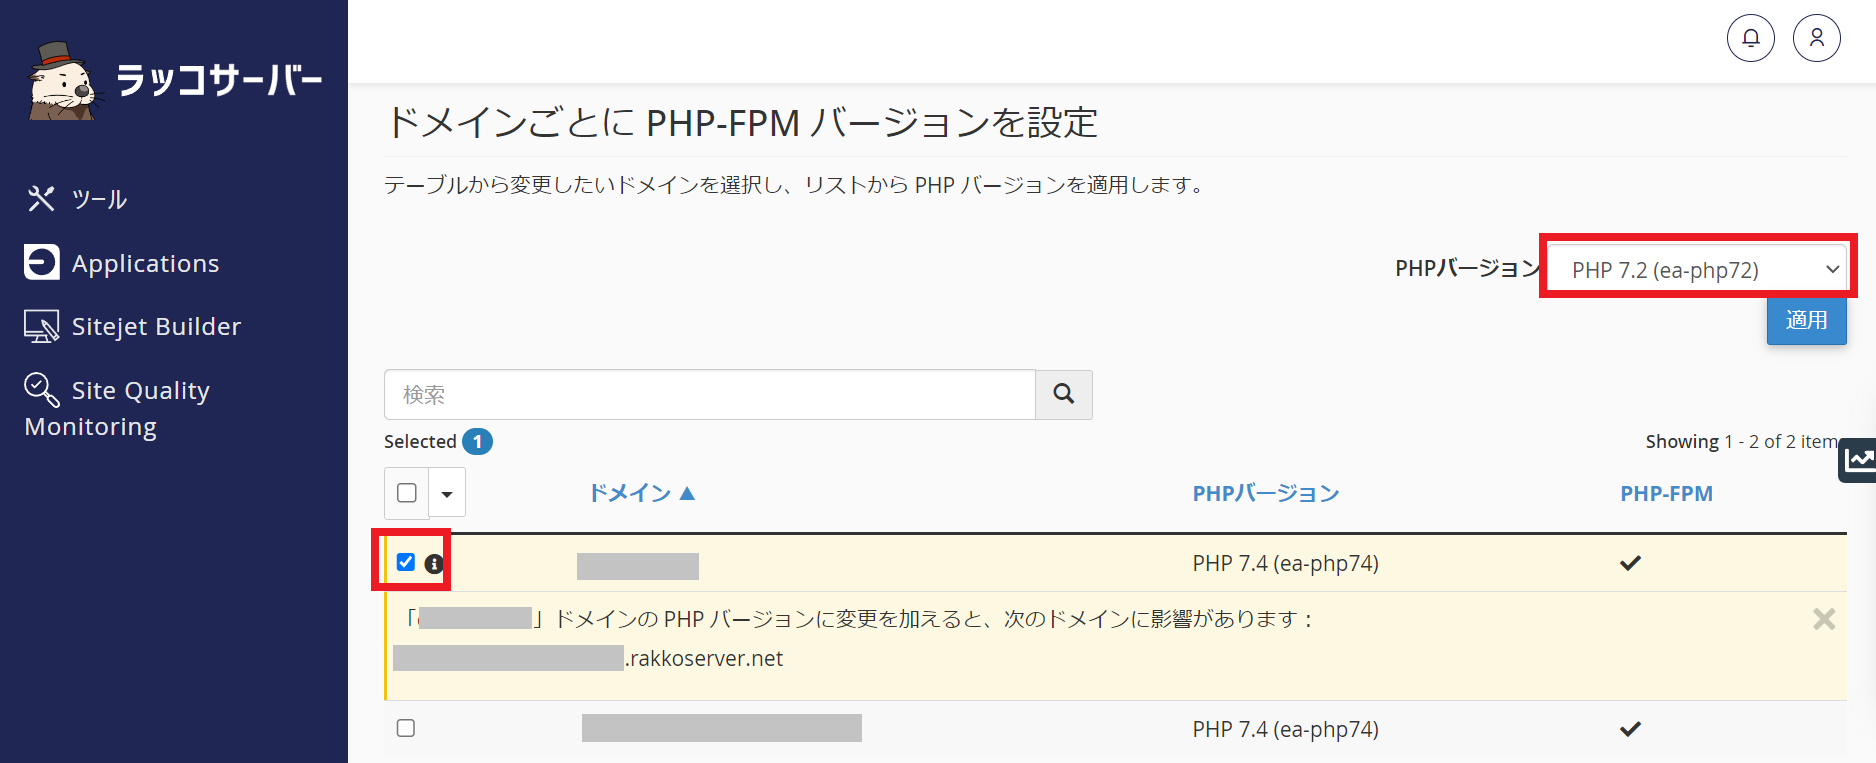 PHPバージョンの適用